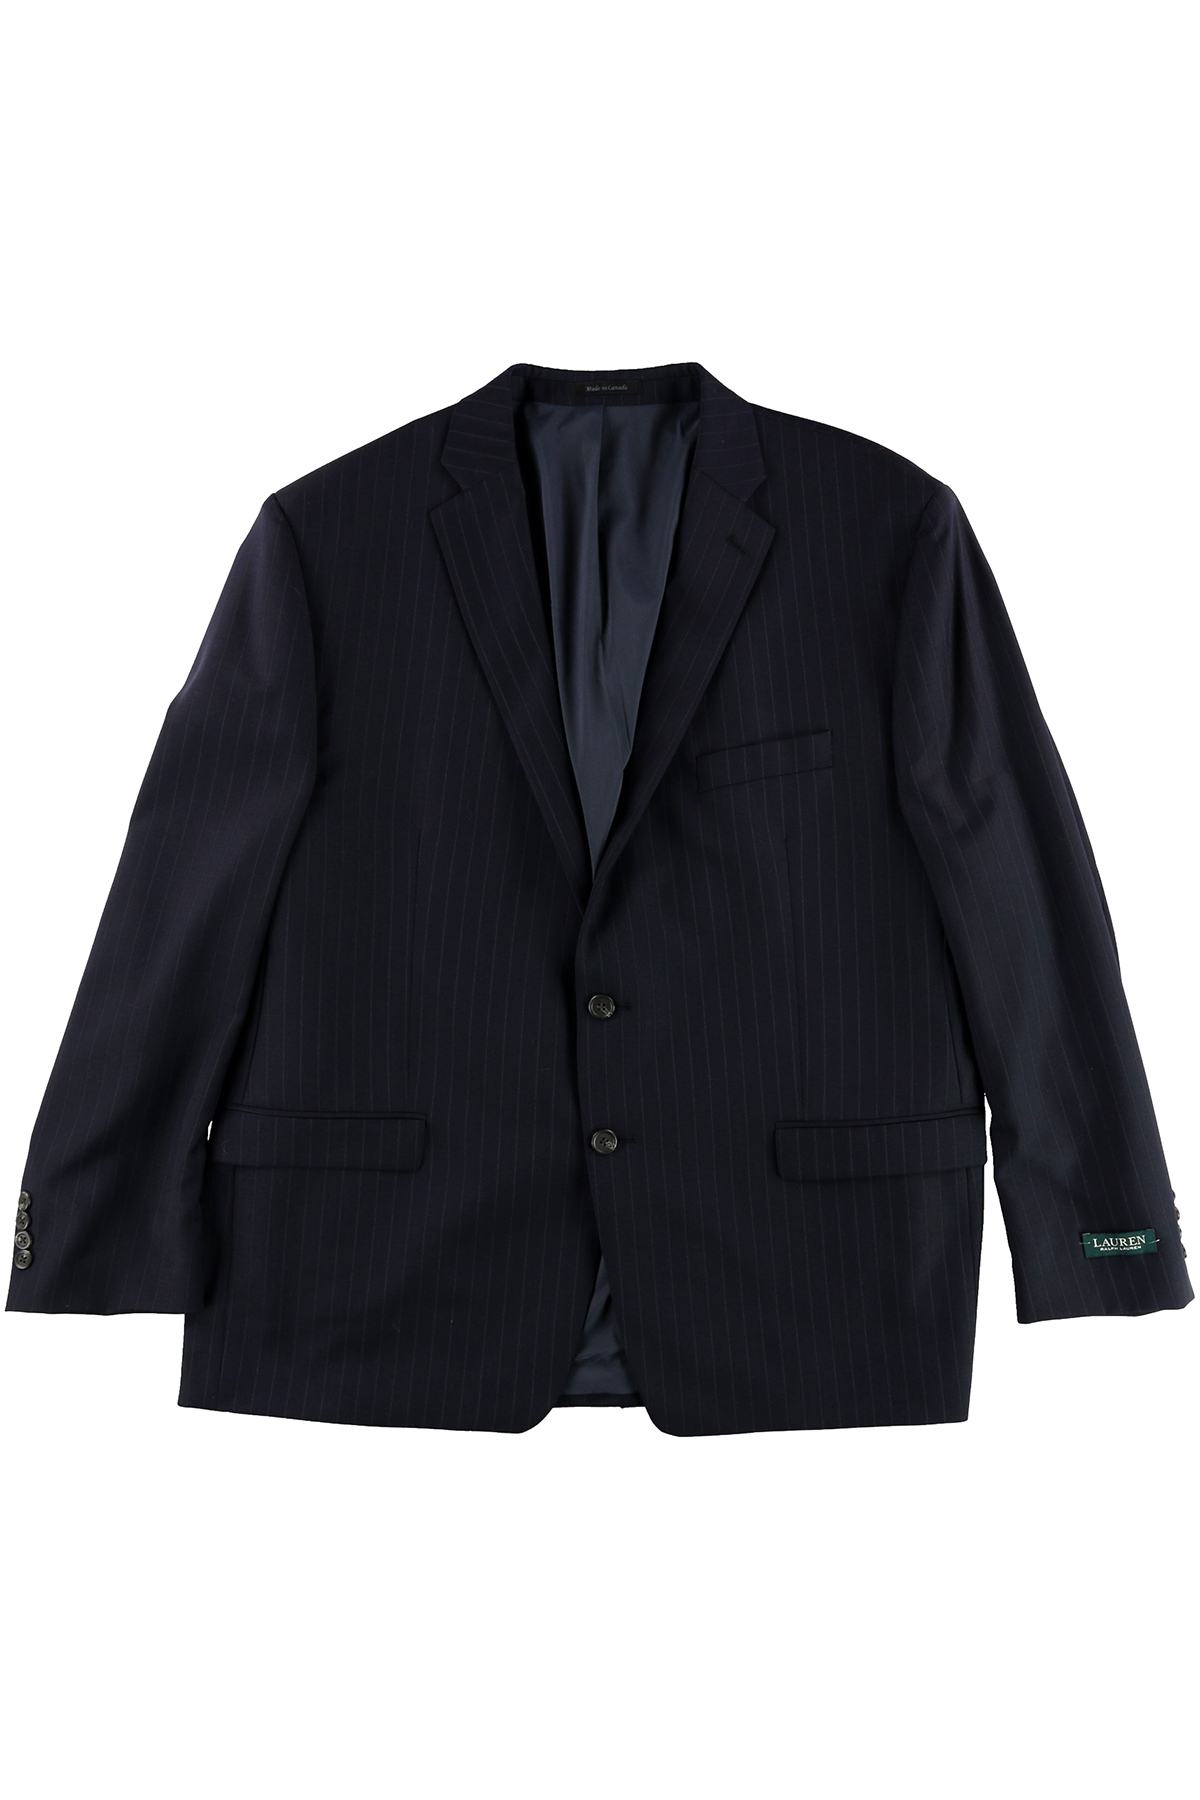 Lauren Ralph Lauren Navy Pinstripe Total Comfort Tuxedo Suit Jacket